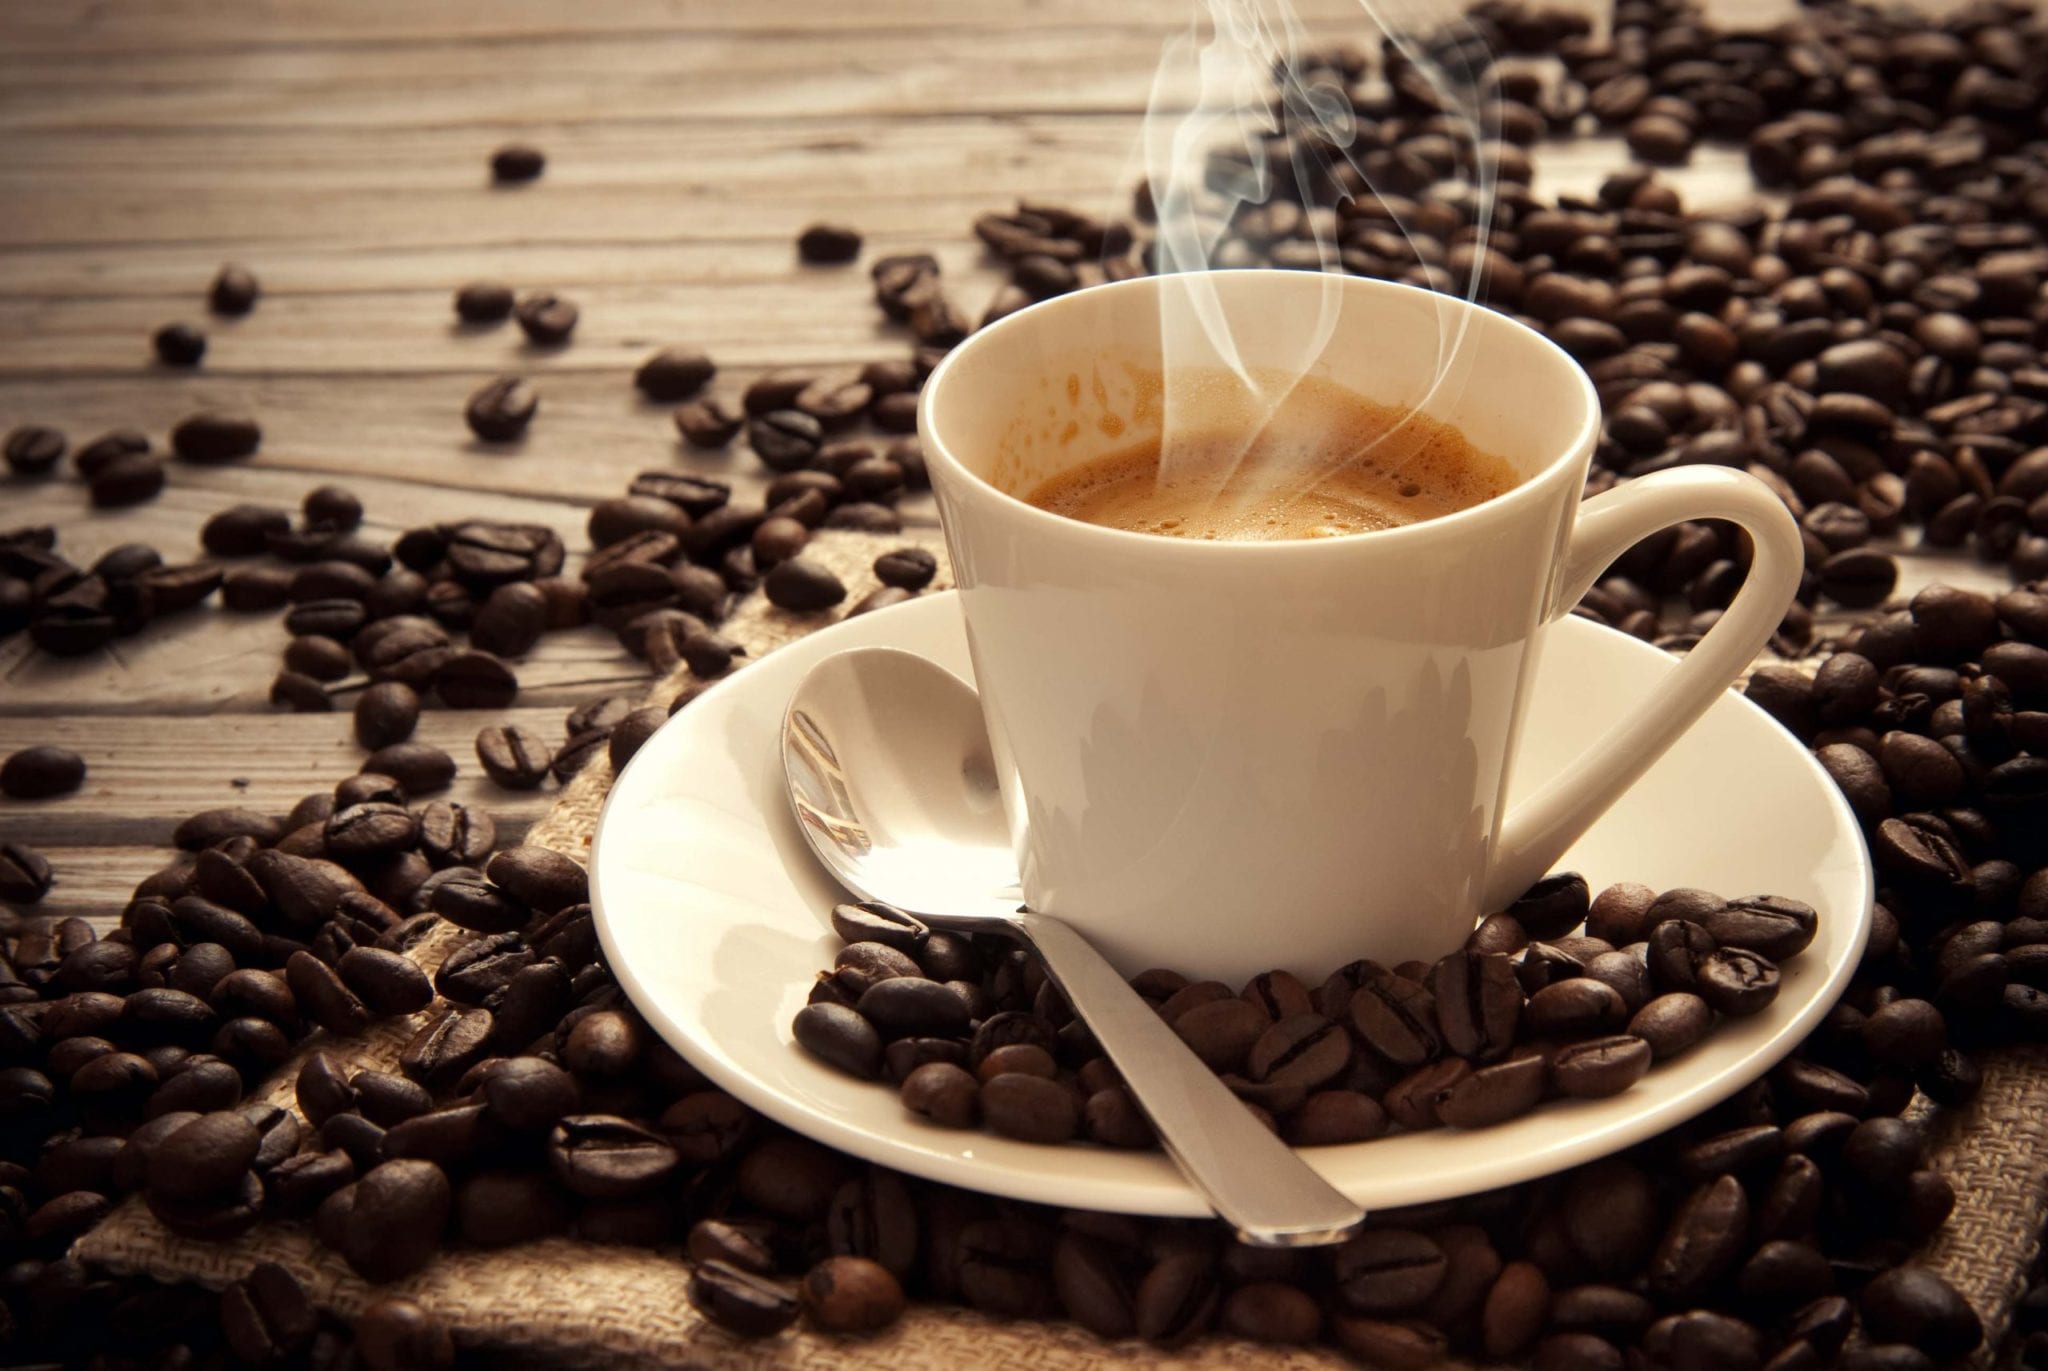 Kjo është mënyra më e rrezikshme e konsumimit të kafesë, sipas mjekëve